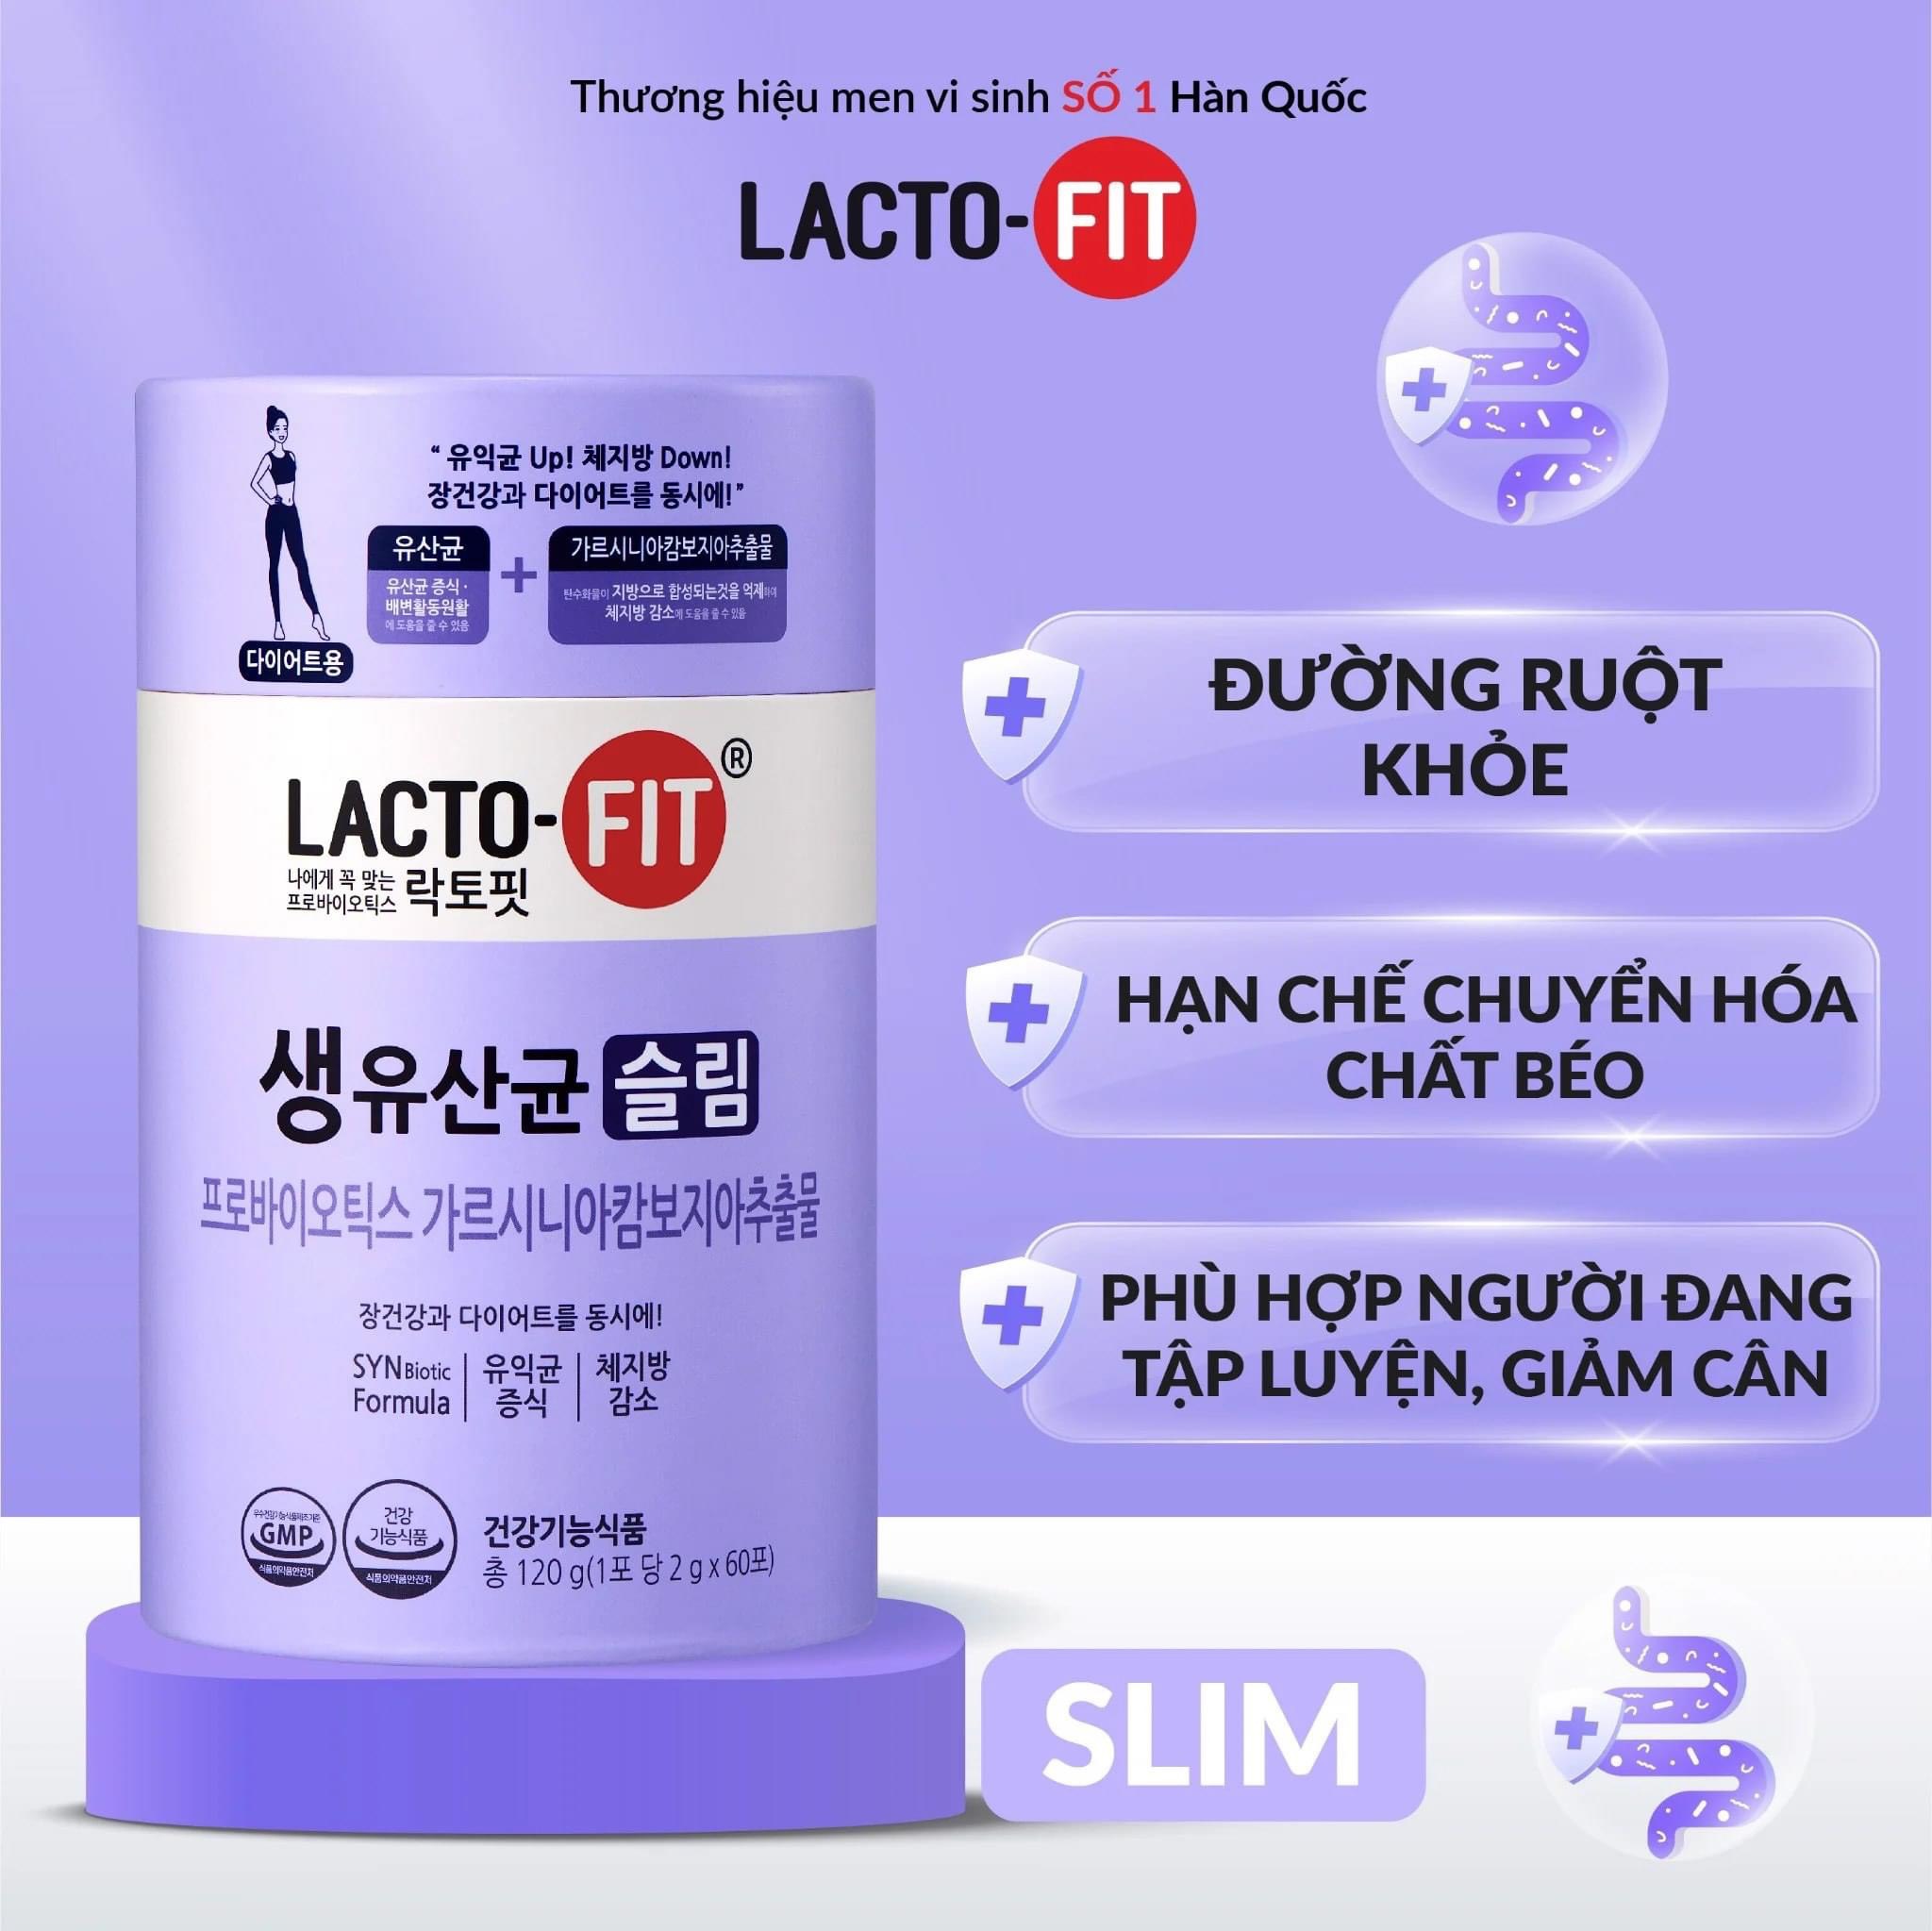 Men vi sinh Lacto-fit SLIM 2gx30 gói hỗ trợ giảm cân nhanh